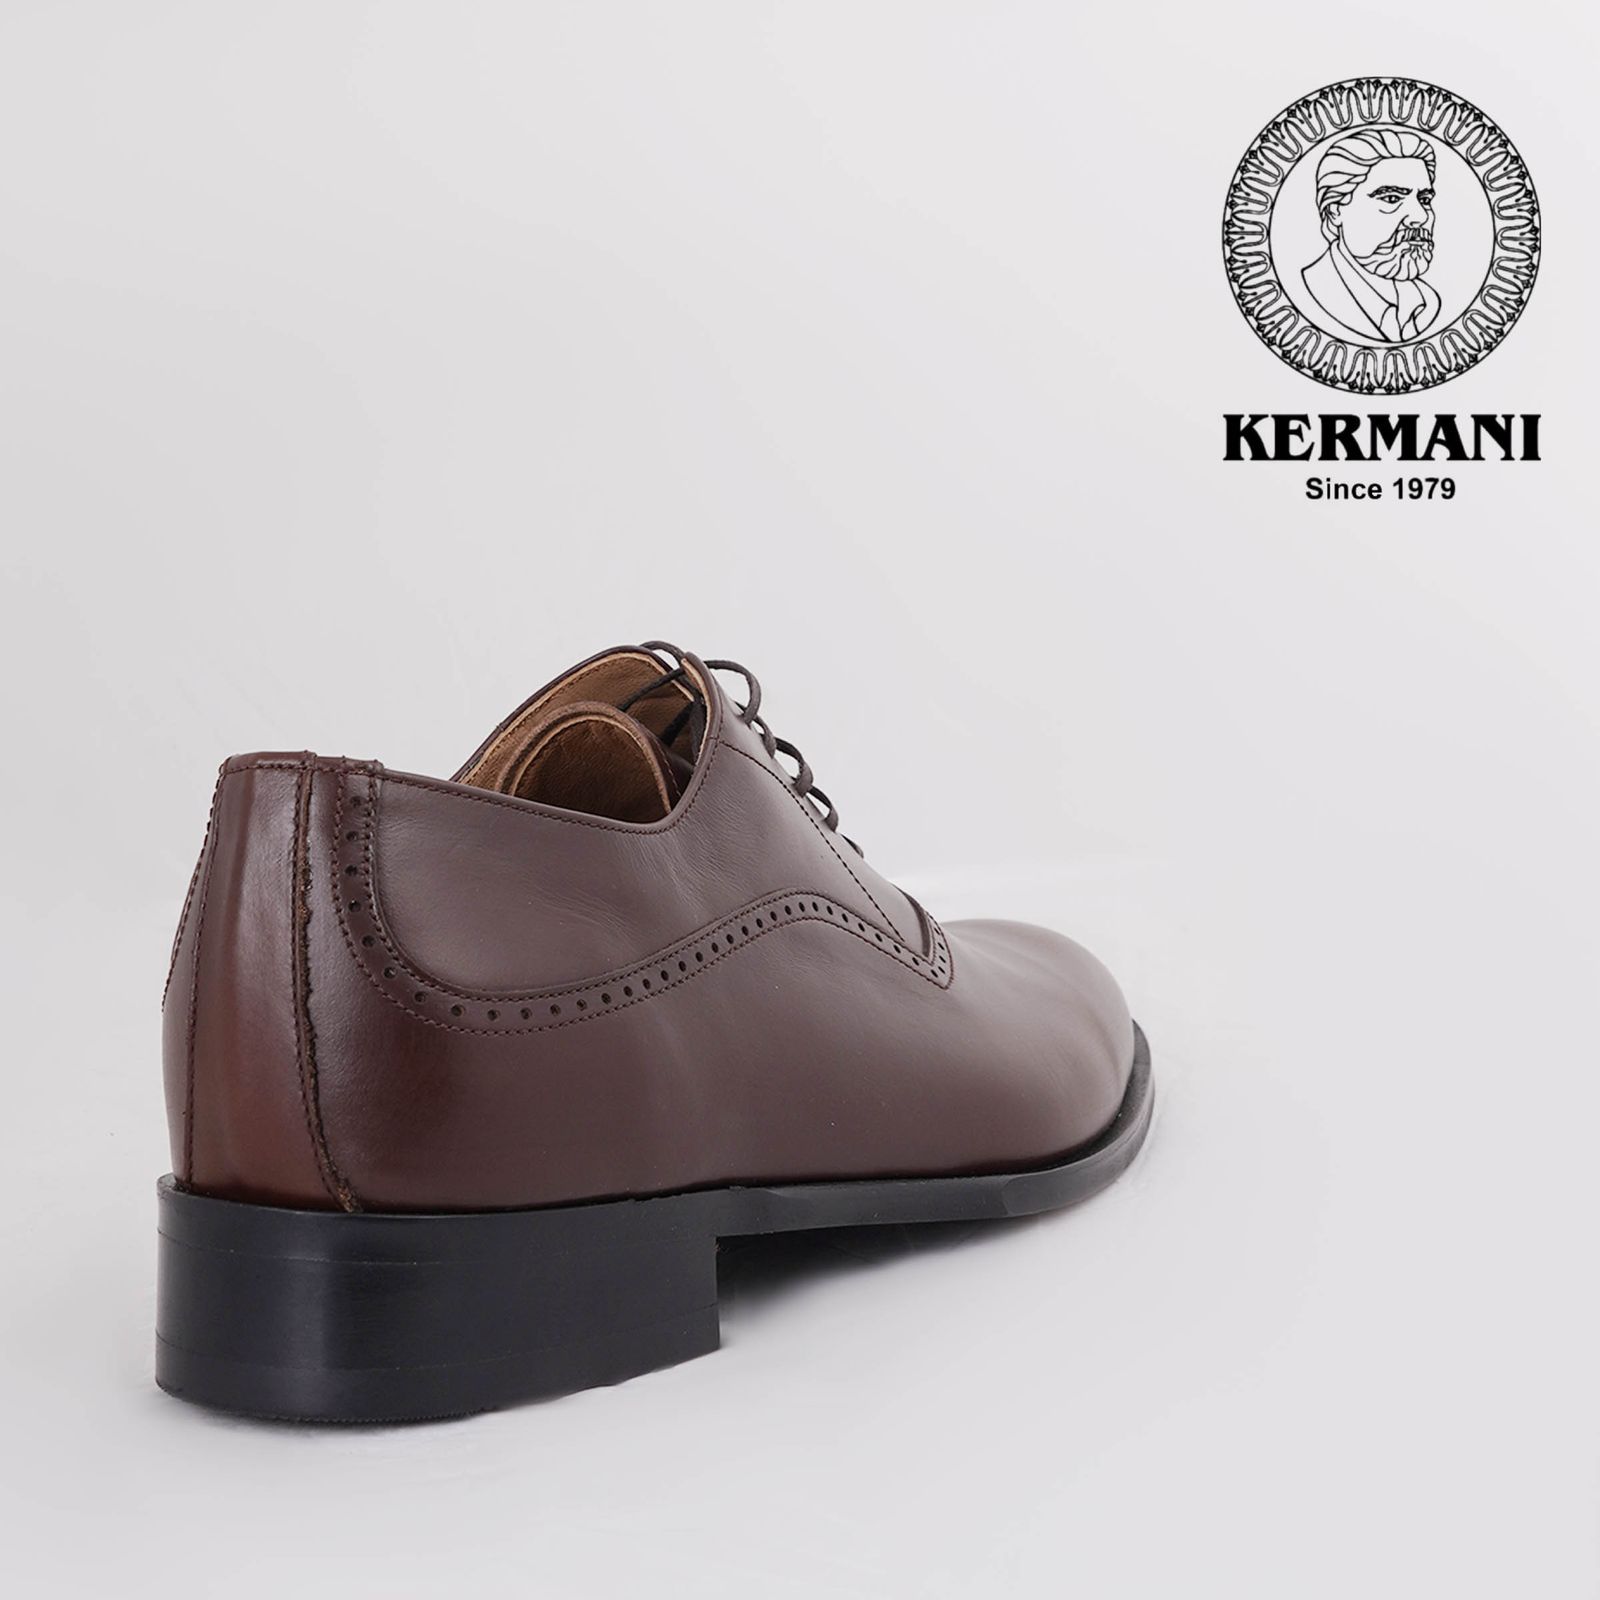 کفش مردانه کرمانی مدل چرم دستدوز طبیعی کد 1071 رنگ قهوه ای -  - 5